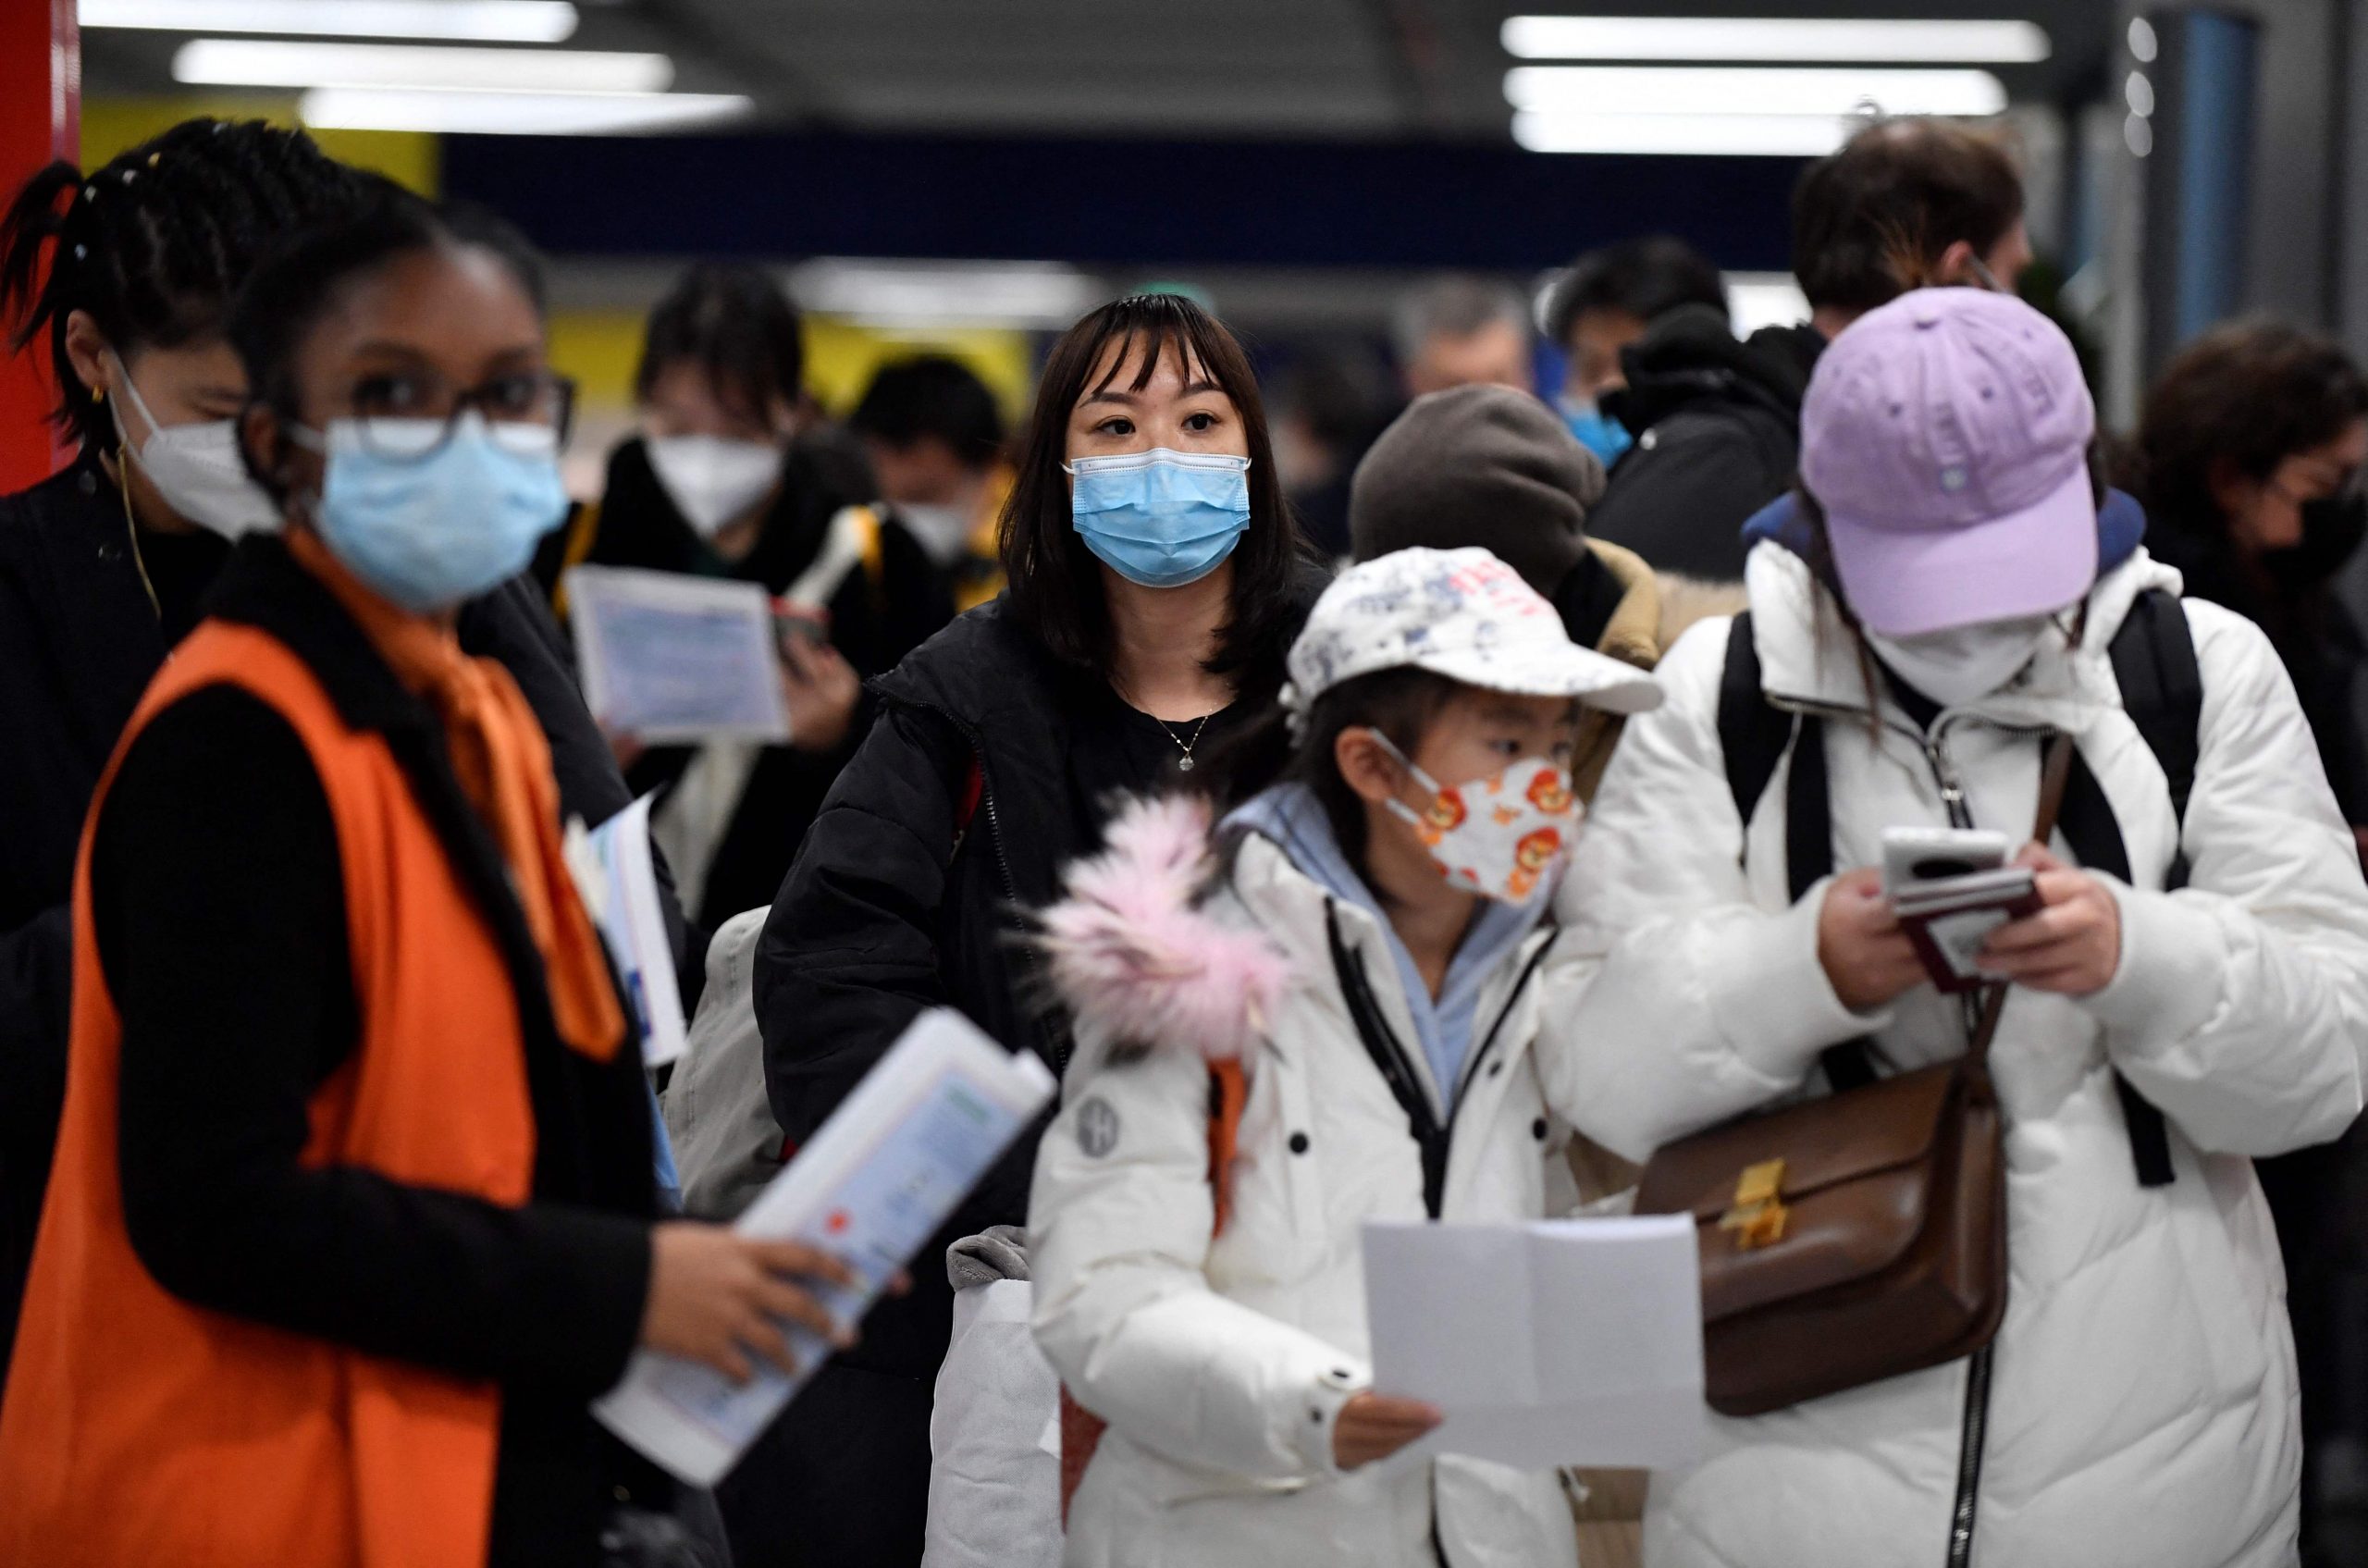 法国开始随机抽验中国抵步旅客 追踪变种病毒